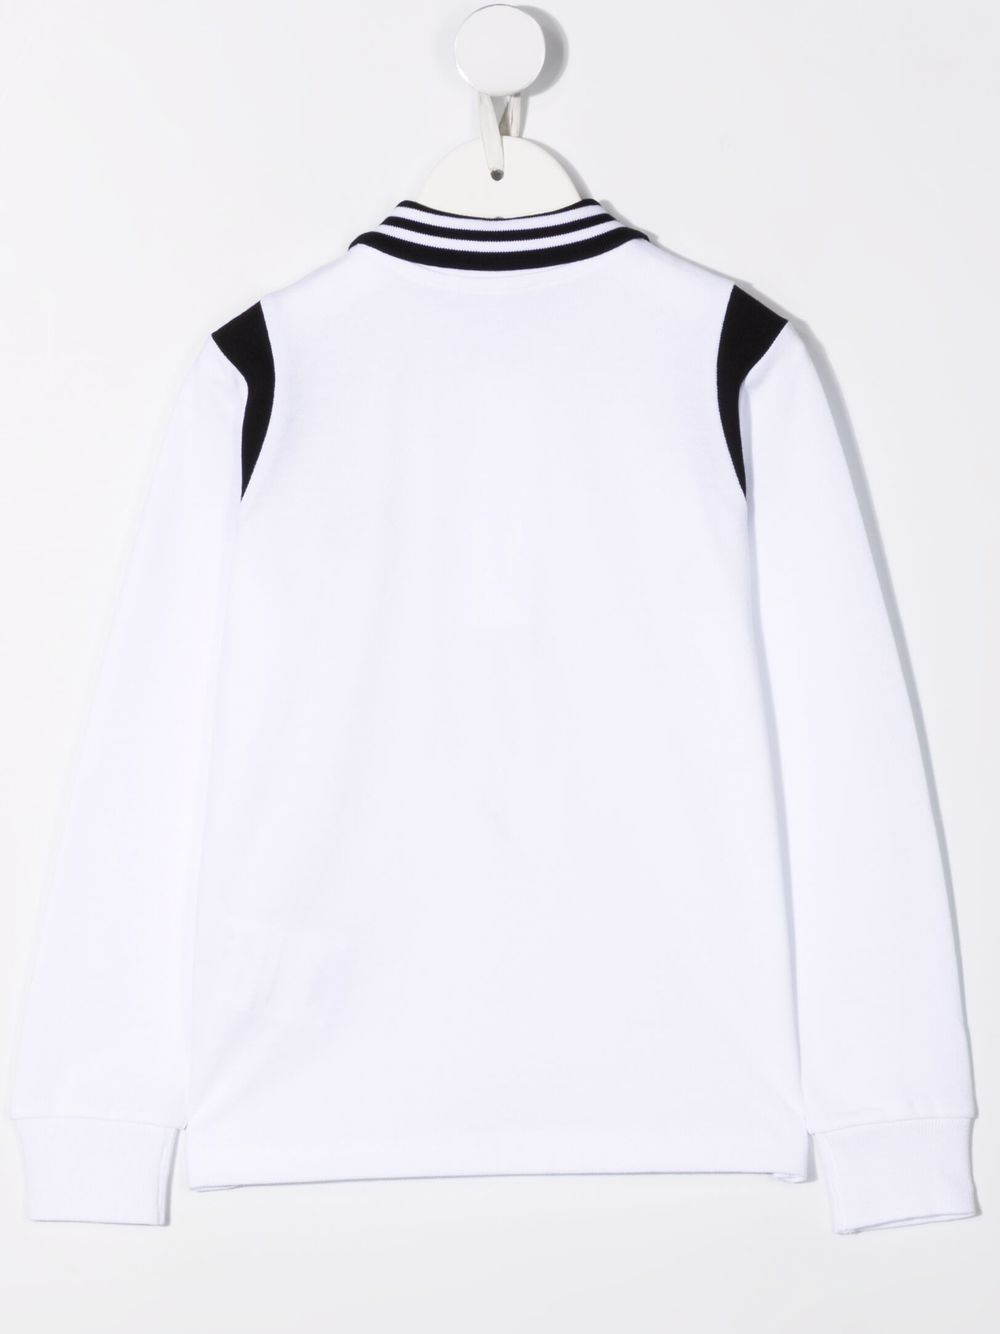 фото Moncler enfant рубашка поло с длинными рукавами и логотипом